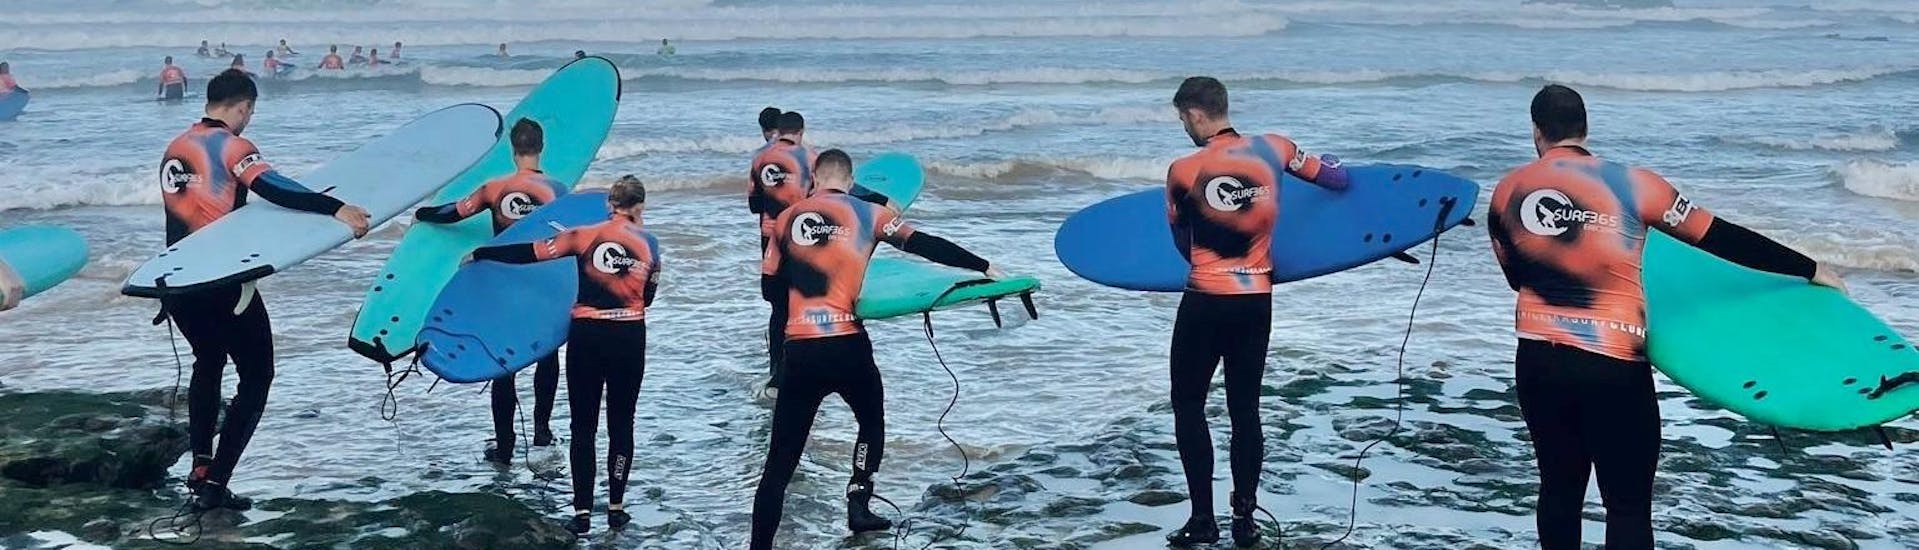 Un gruppo di surfisti pronti a mettere in pratica quanto appreso durante la lezione di surf a Praia do Matadouro, vicino a Ericeira, con Surf365 Ericeira.